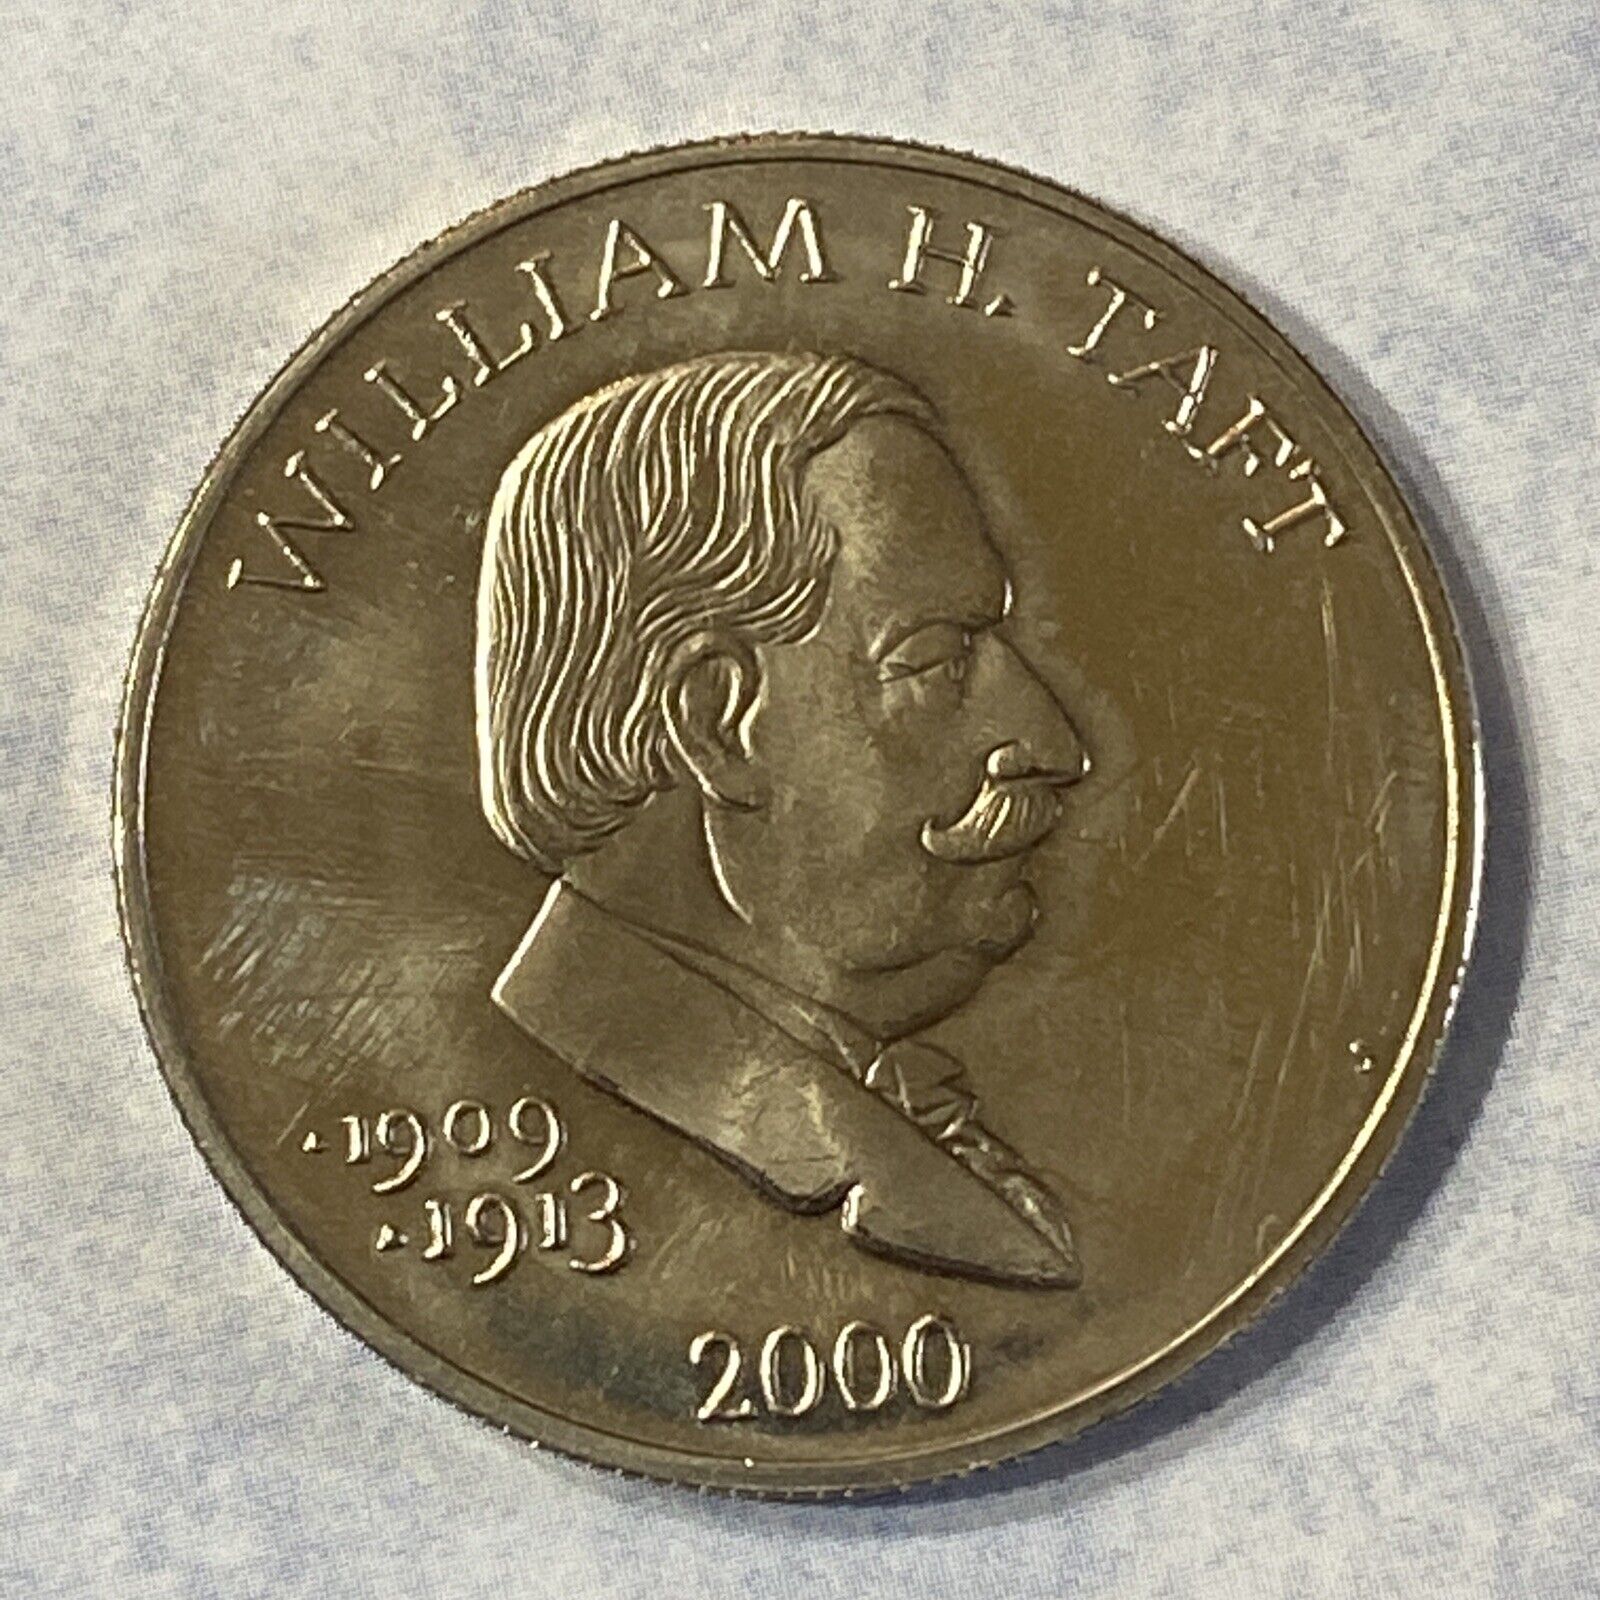 William H Taft - 2000 Republic Of Liberia Five Dollar $5 Coin - Collectors Coin